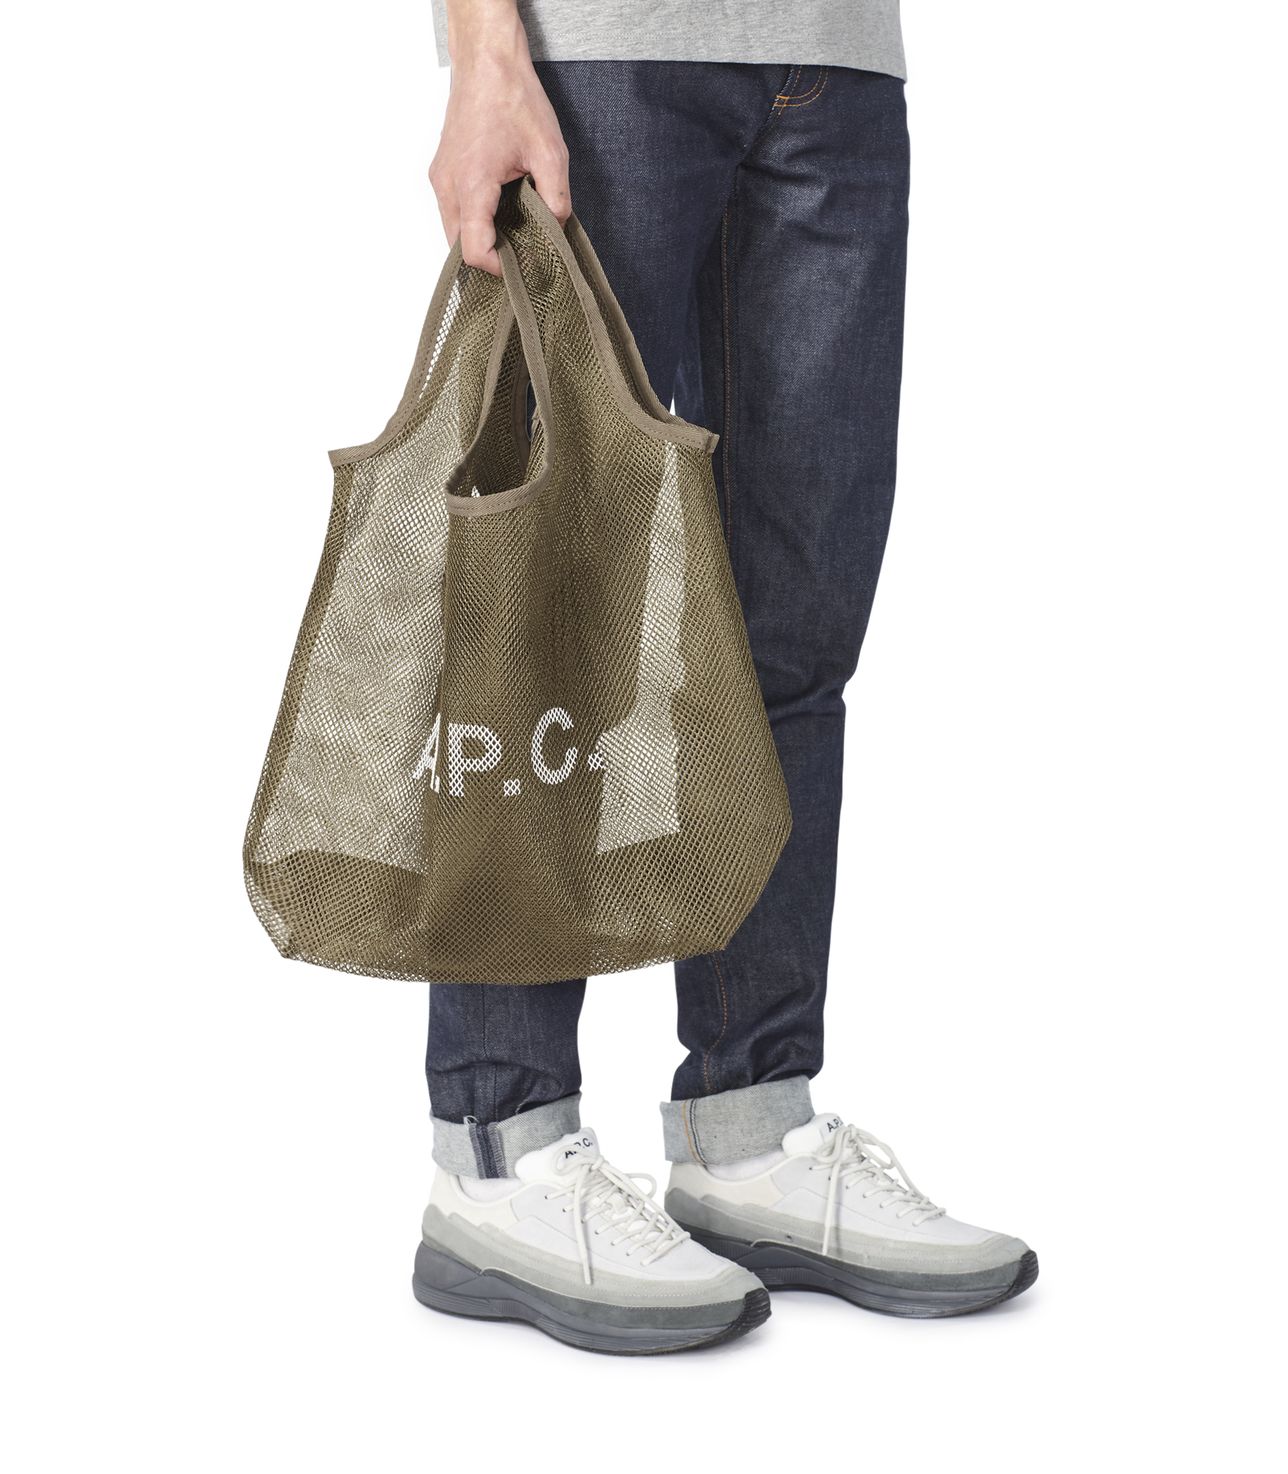 Rebound shopping bag KHAKI APC